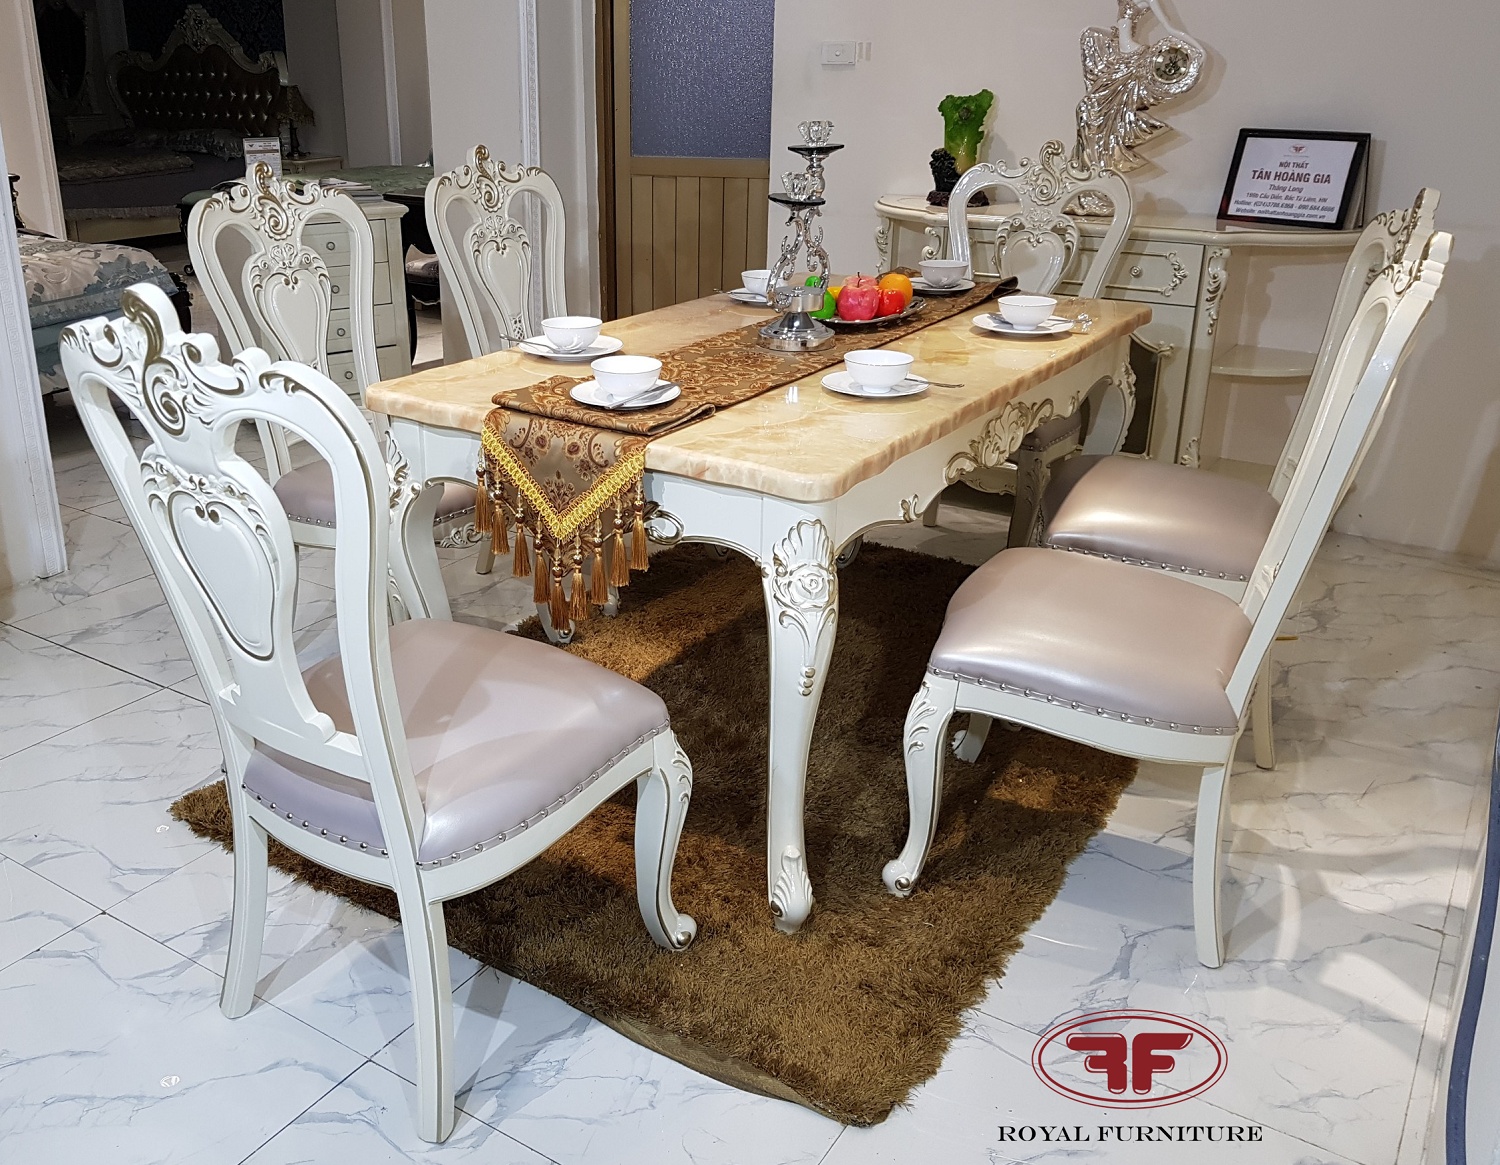 Với thiết kế mặt đá hình chữ nhật đẹp mắt và chất liệu cao cấp, bộ bàn ghế ăn tân cổ điển sẽ đem lại cho căn phòng ăn của bạn vẻ đẹp ấn tượng và độc đáo.